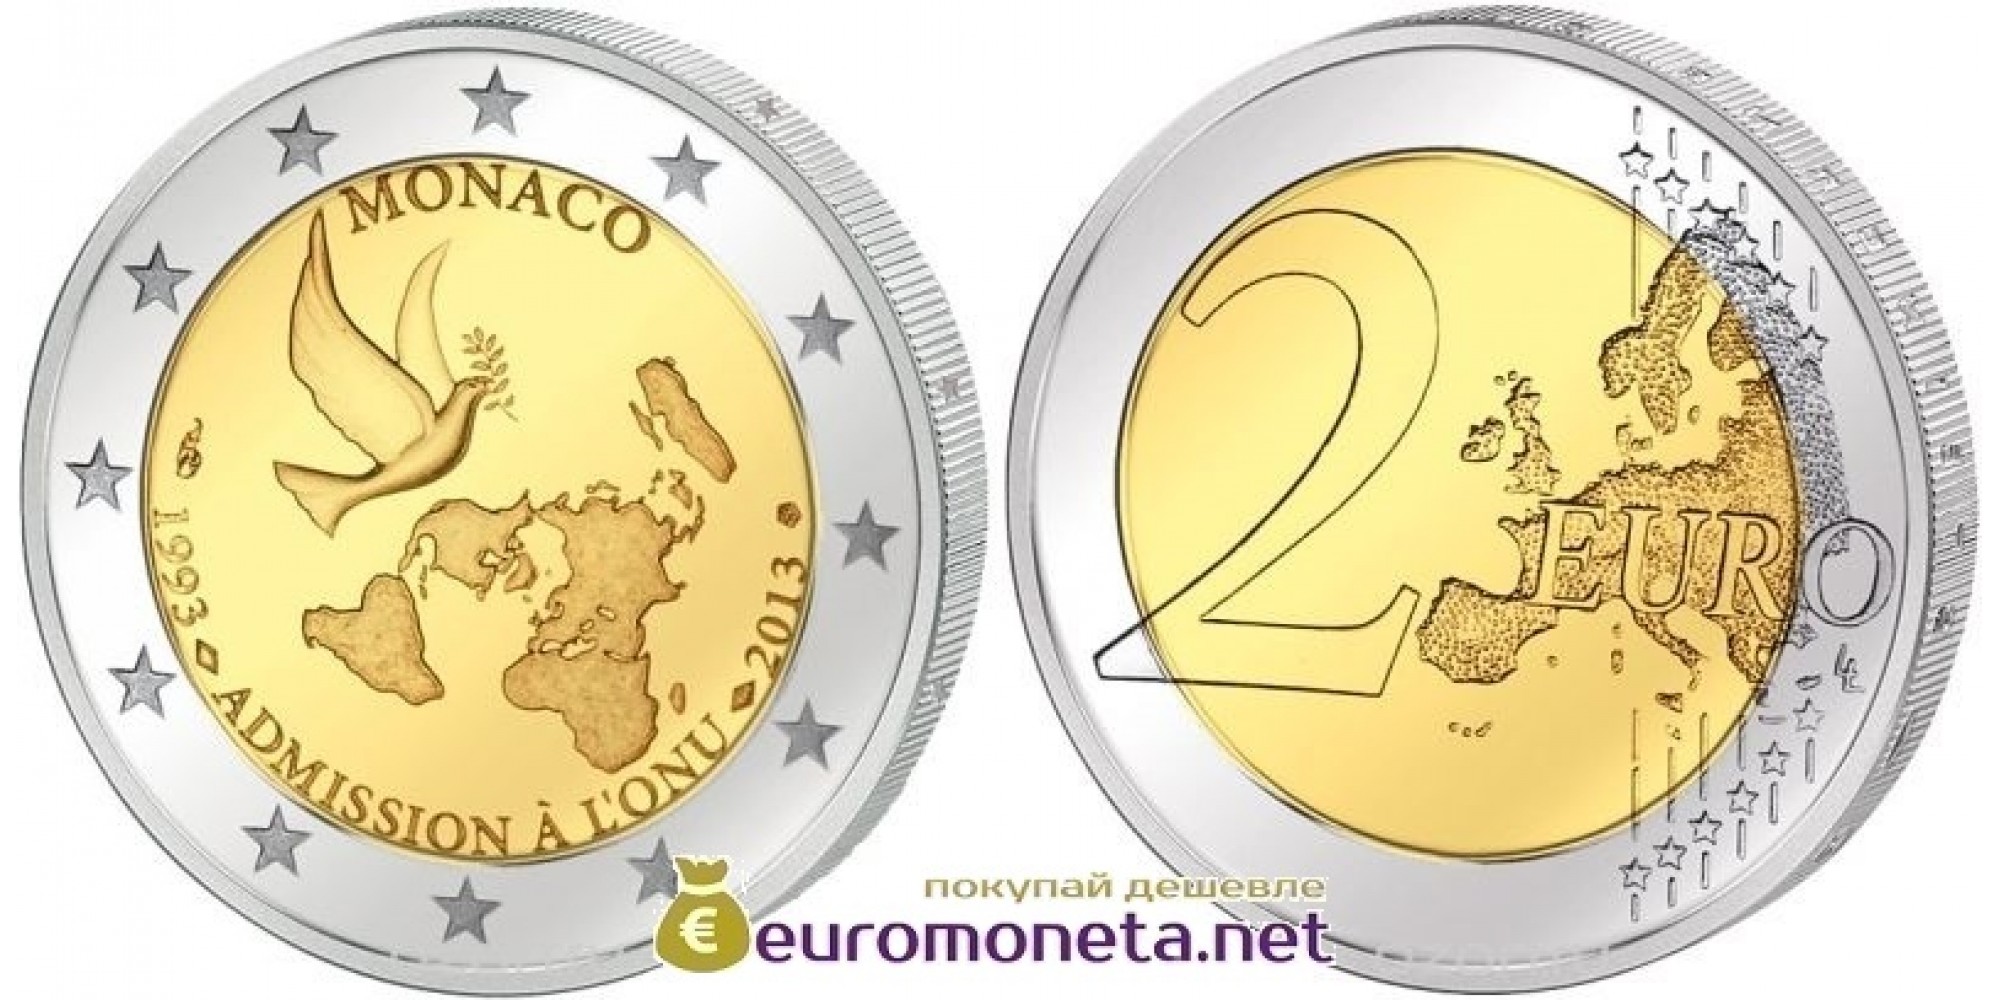 Монако 2 евро 2013 20 лет со дня вступления Монако в ООН, биметалл АЦ из банковского ролла